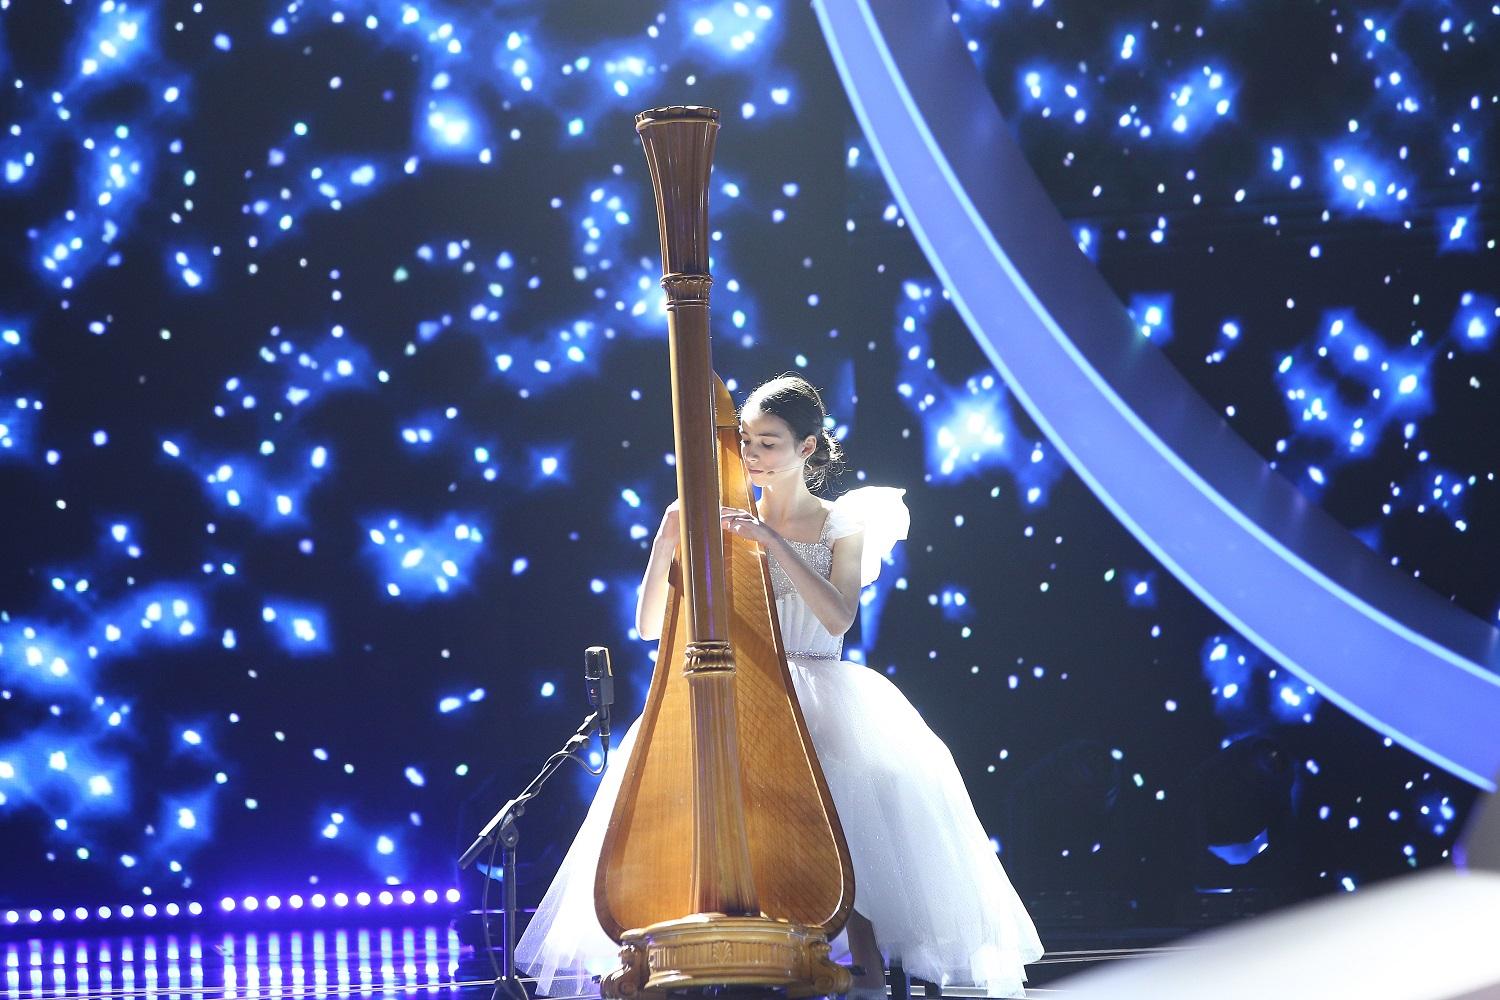 maria ene pe scena la next star intr-o rochie alba cantand la harpa